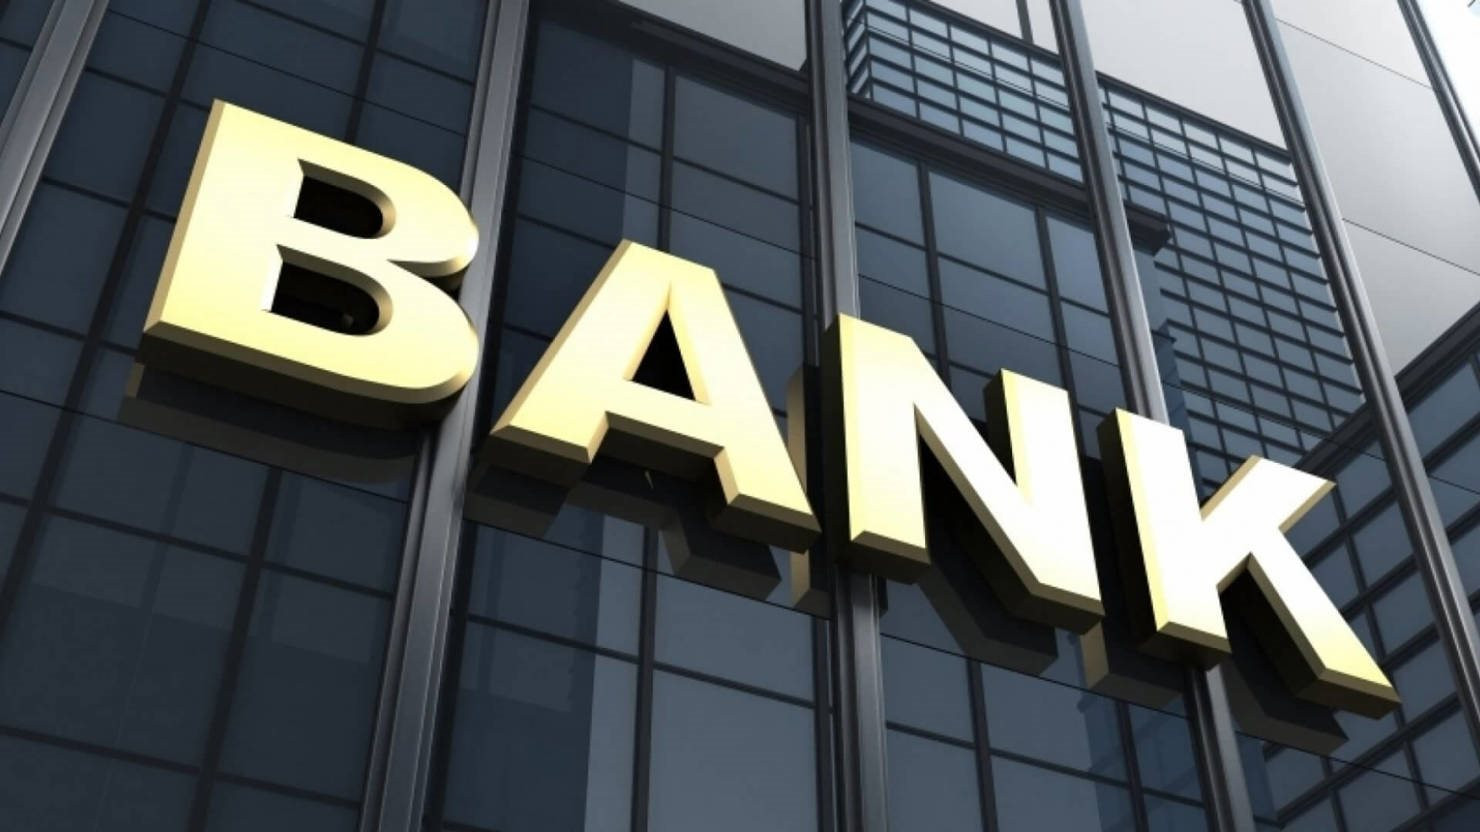 Một ngân hàng “Big 4” có gần 7 tỷ đồng nợ tồn đọng chưa xử lý dứt điểm liên quan đến Công ty Việt Á - Ảnh 1.